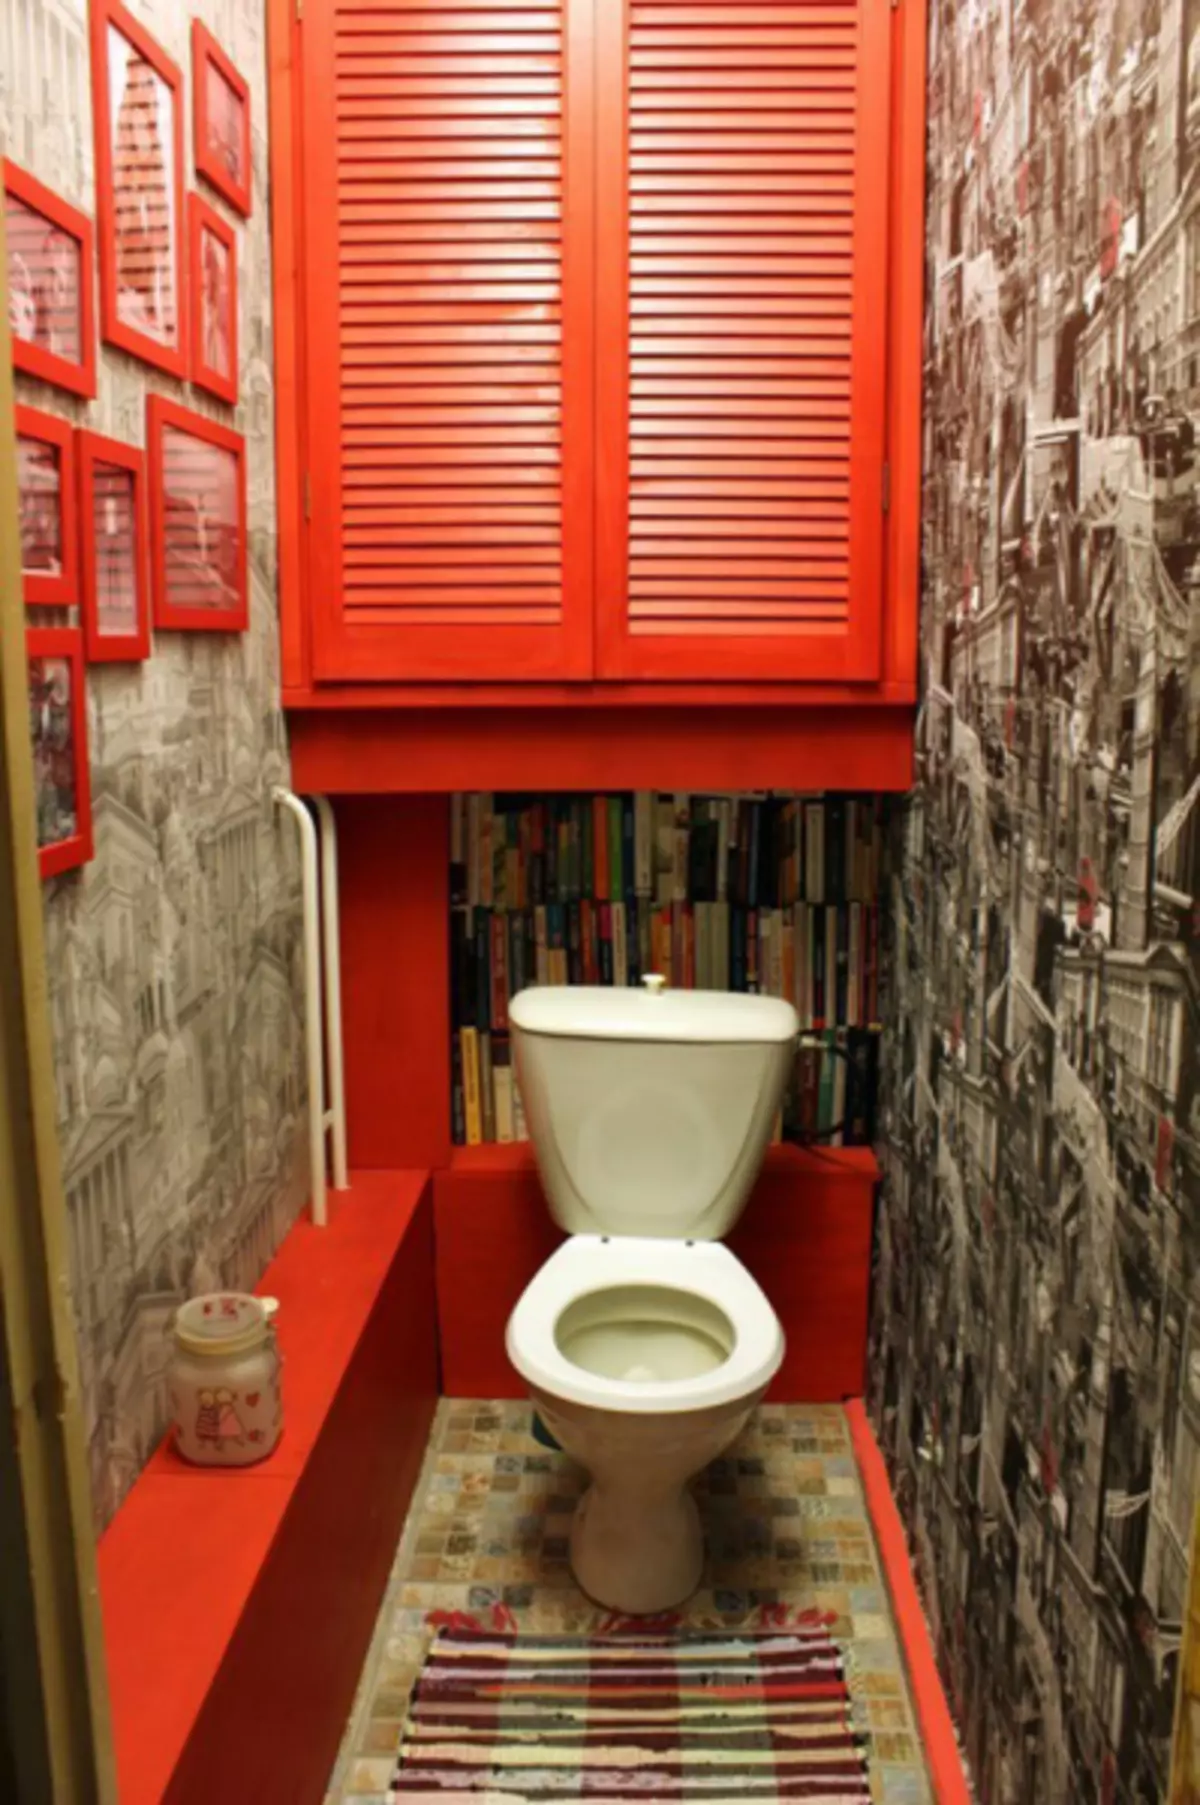 ซ่อมแซมและออกแบบห้องน้ำใน Khrushchev (55 รูป)